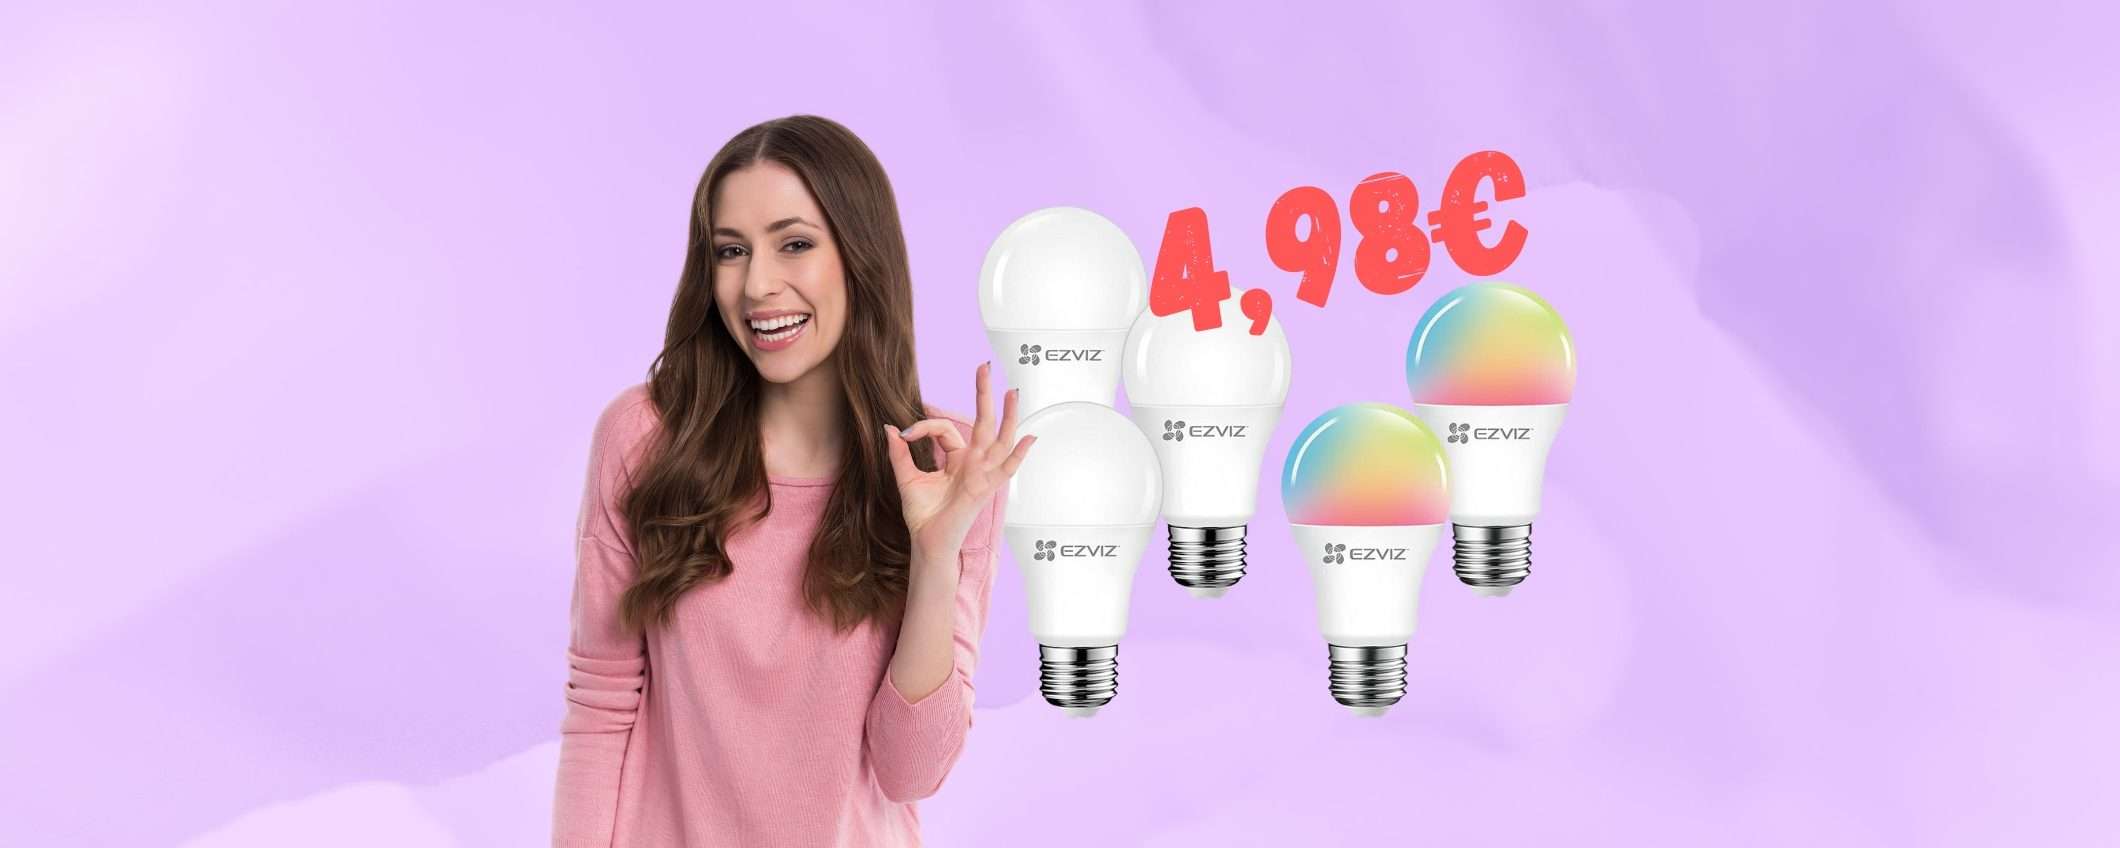 5 lampadine smart compatibili con Alexa e Google Home a 4,98€